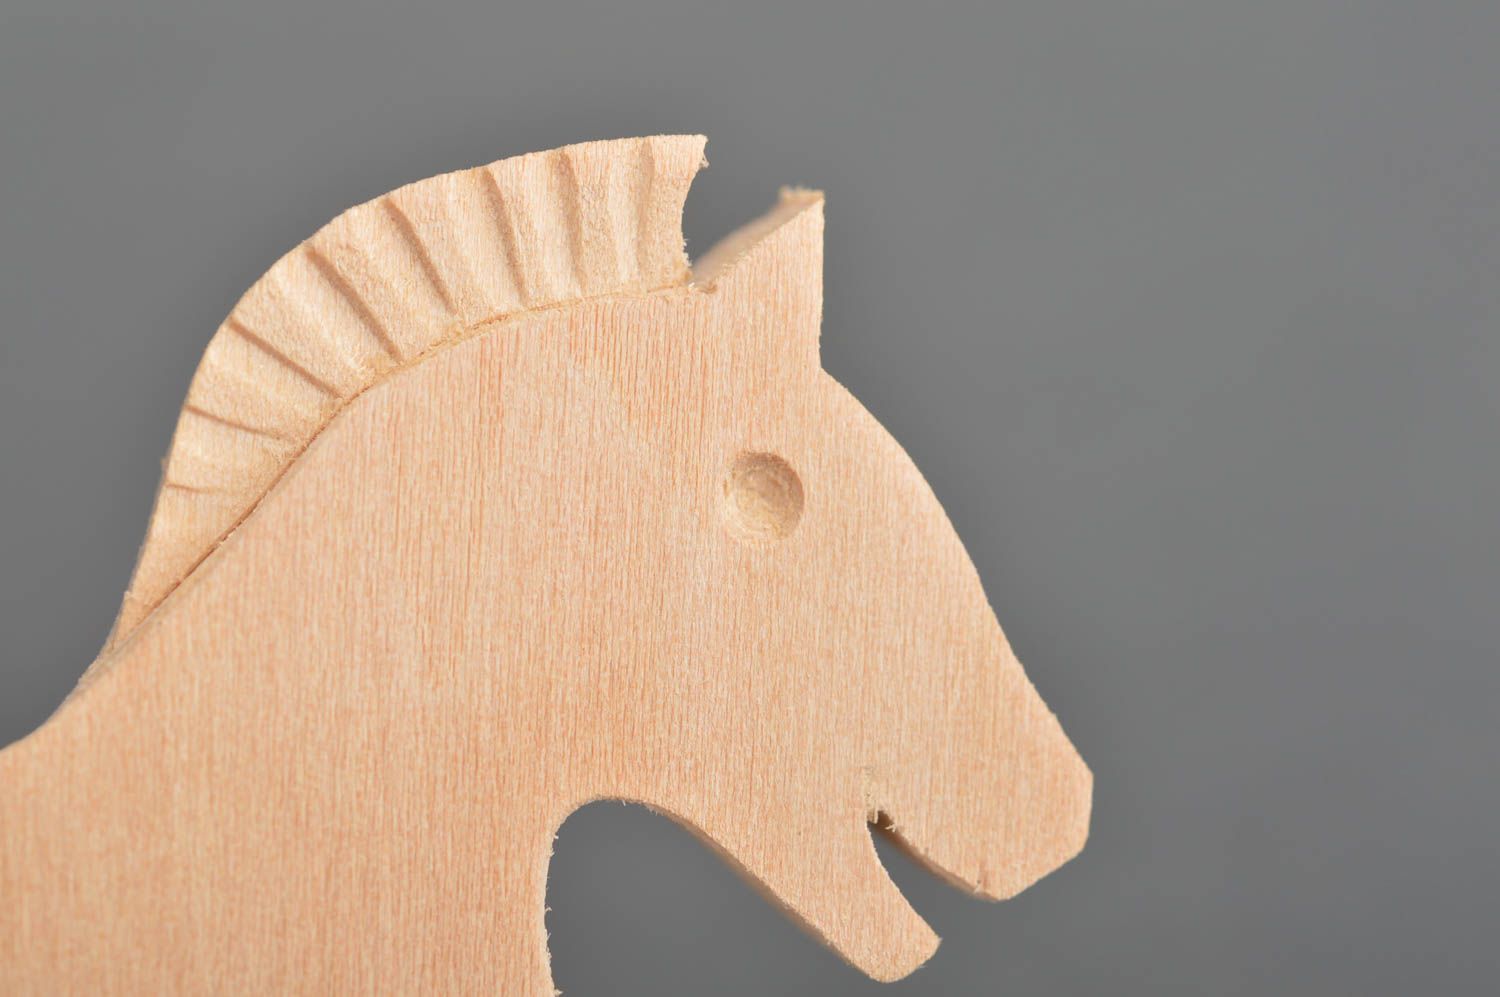 Статуэтка из дерева игрушка в виде лошадки или заготовка под роспись хэнд мэйд фото 4